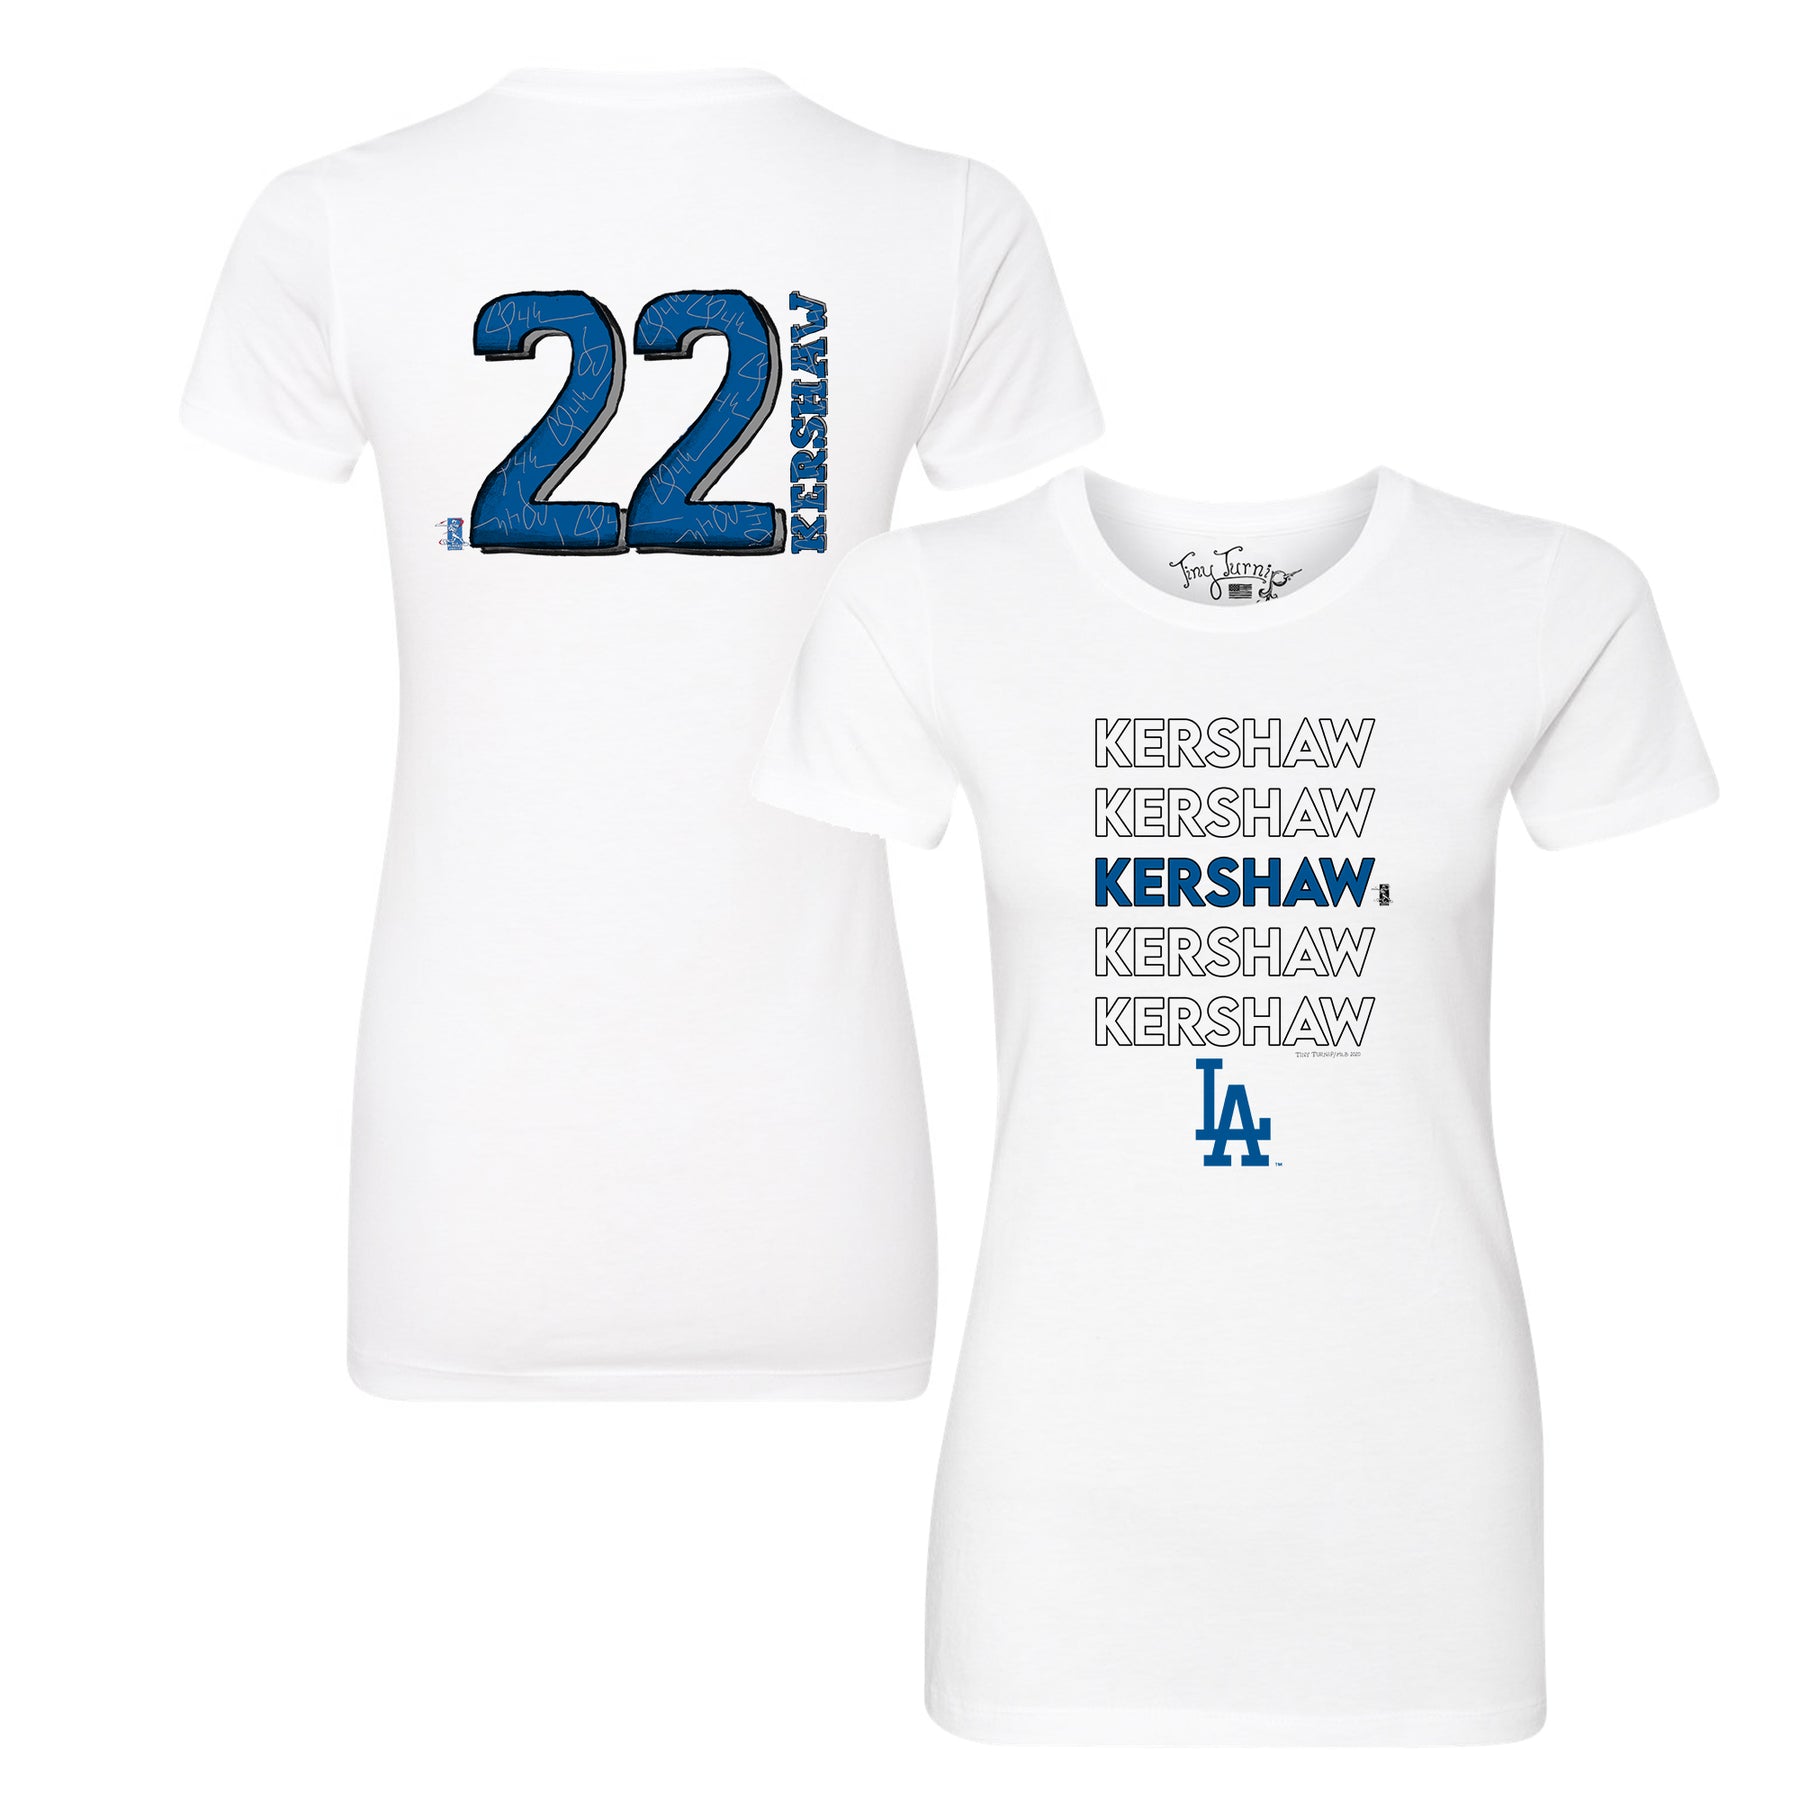 Clayton Kershaw Jerseys, Clayton Kershaw Shirt, Clayton Kershaw Gear &  Merchandise